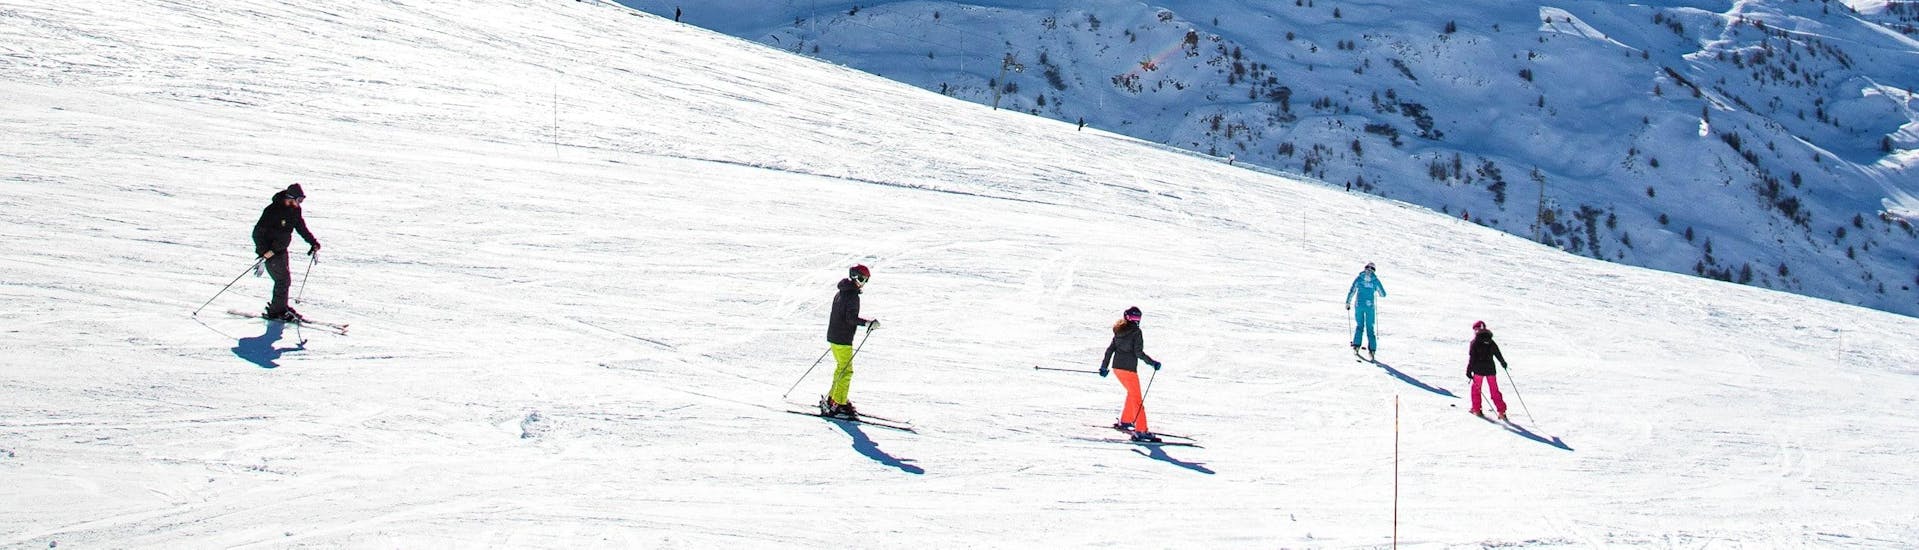 Les skieurs descendent une pente en toute confiance pendant leur Cours de ski Adultes pour Tous niveaux avec l'école de ski ESI Ski Family à Val Thorens.